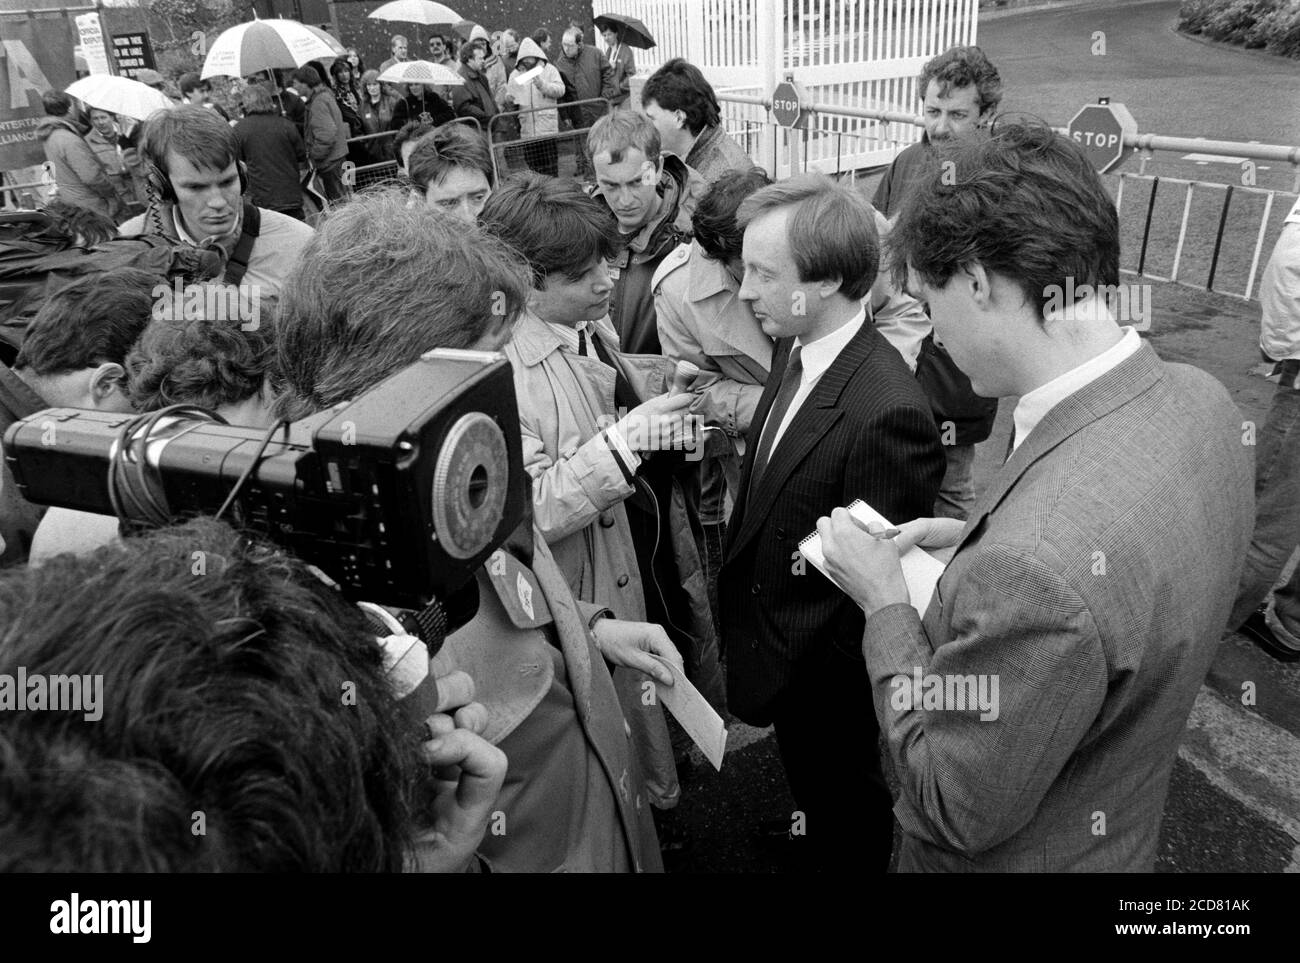 BBC Strike und NUJ und BETA-Streikposten im BBC Television Center, Wood Lane, Shepherd’s Bush. London. 24. April 1989. Foto: Neil Turner Stockfoto